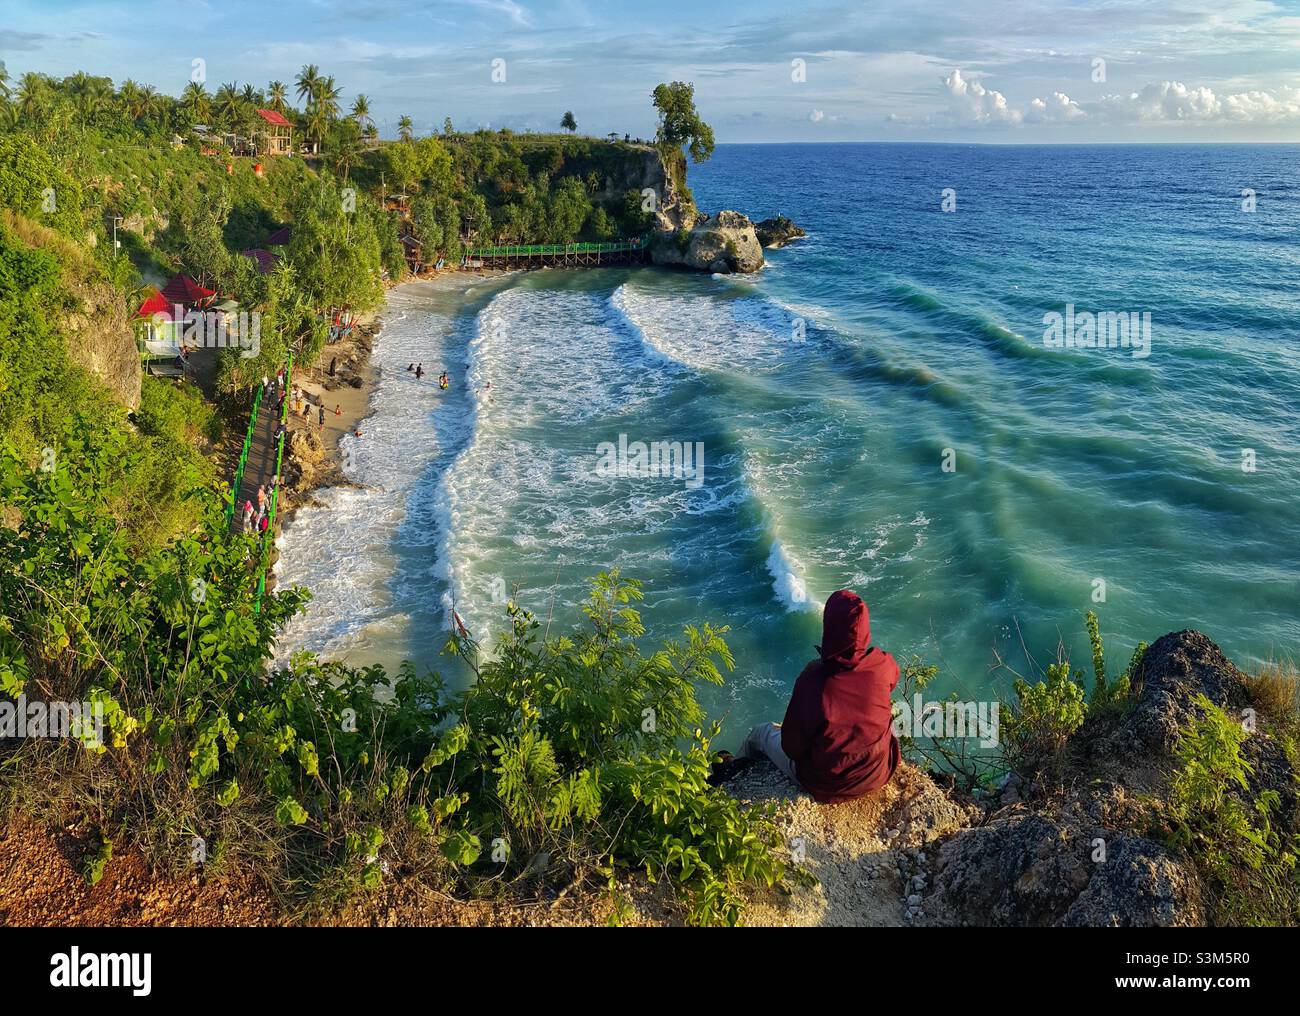 Dato beach, Majene, West Sulawesi, Indonesia Stock Photo - Alamy